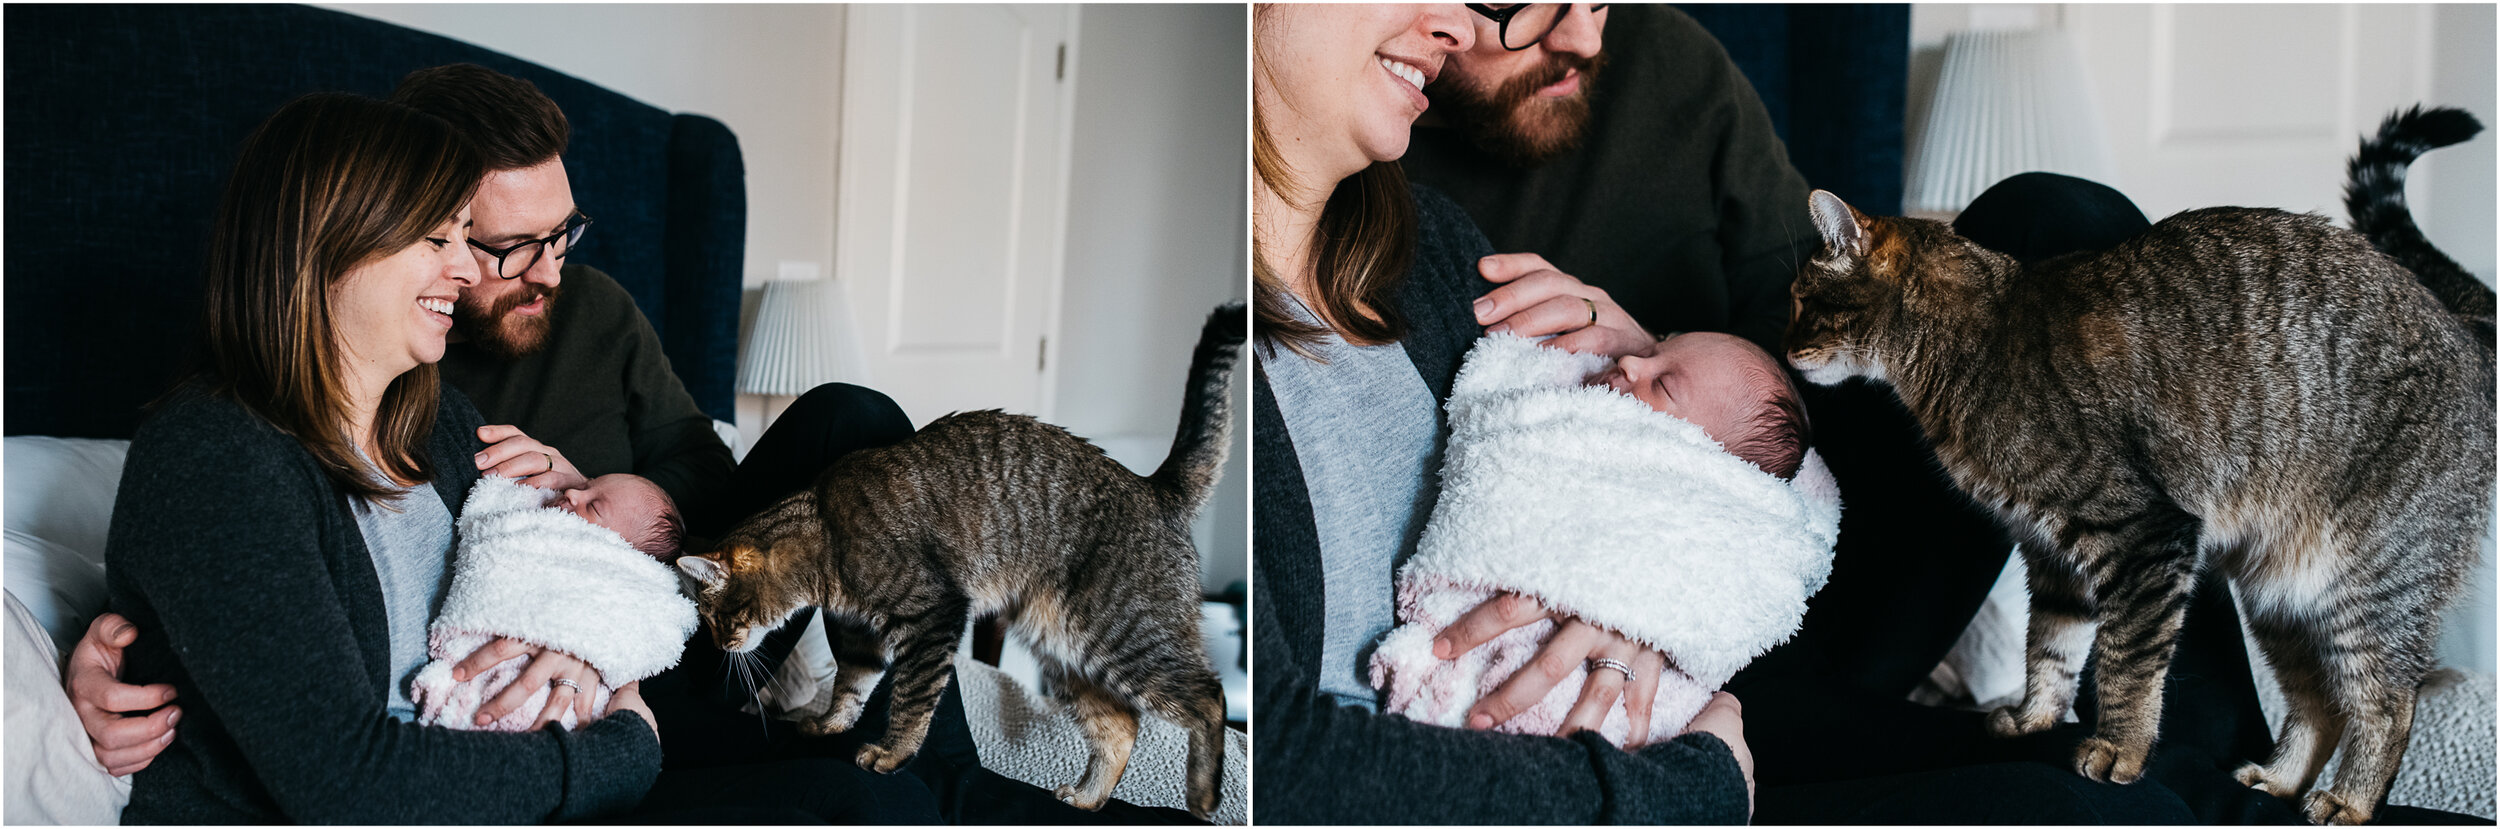 cat greeting the baby, newborn family portraits.jpg